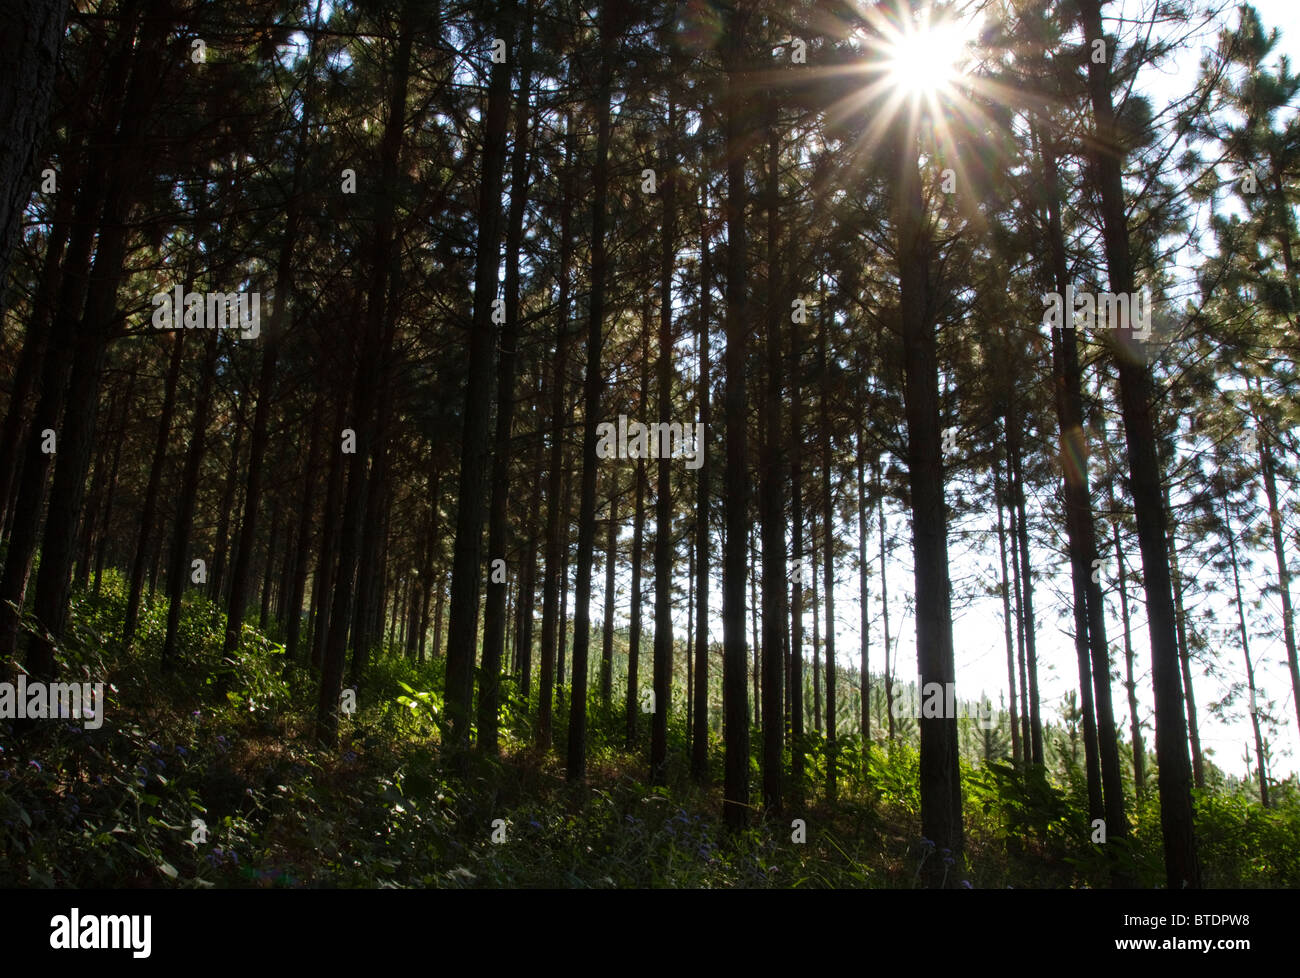 Vista desde dentro de una plantación de pino mostrando el sol filtrado a través de tops de altos pinos Foto de stock